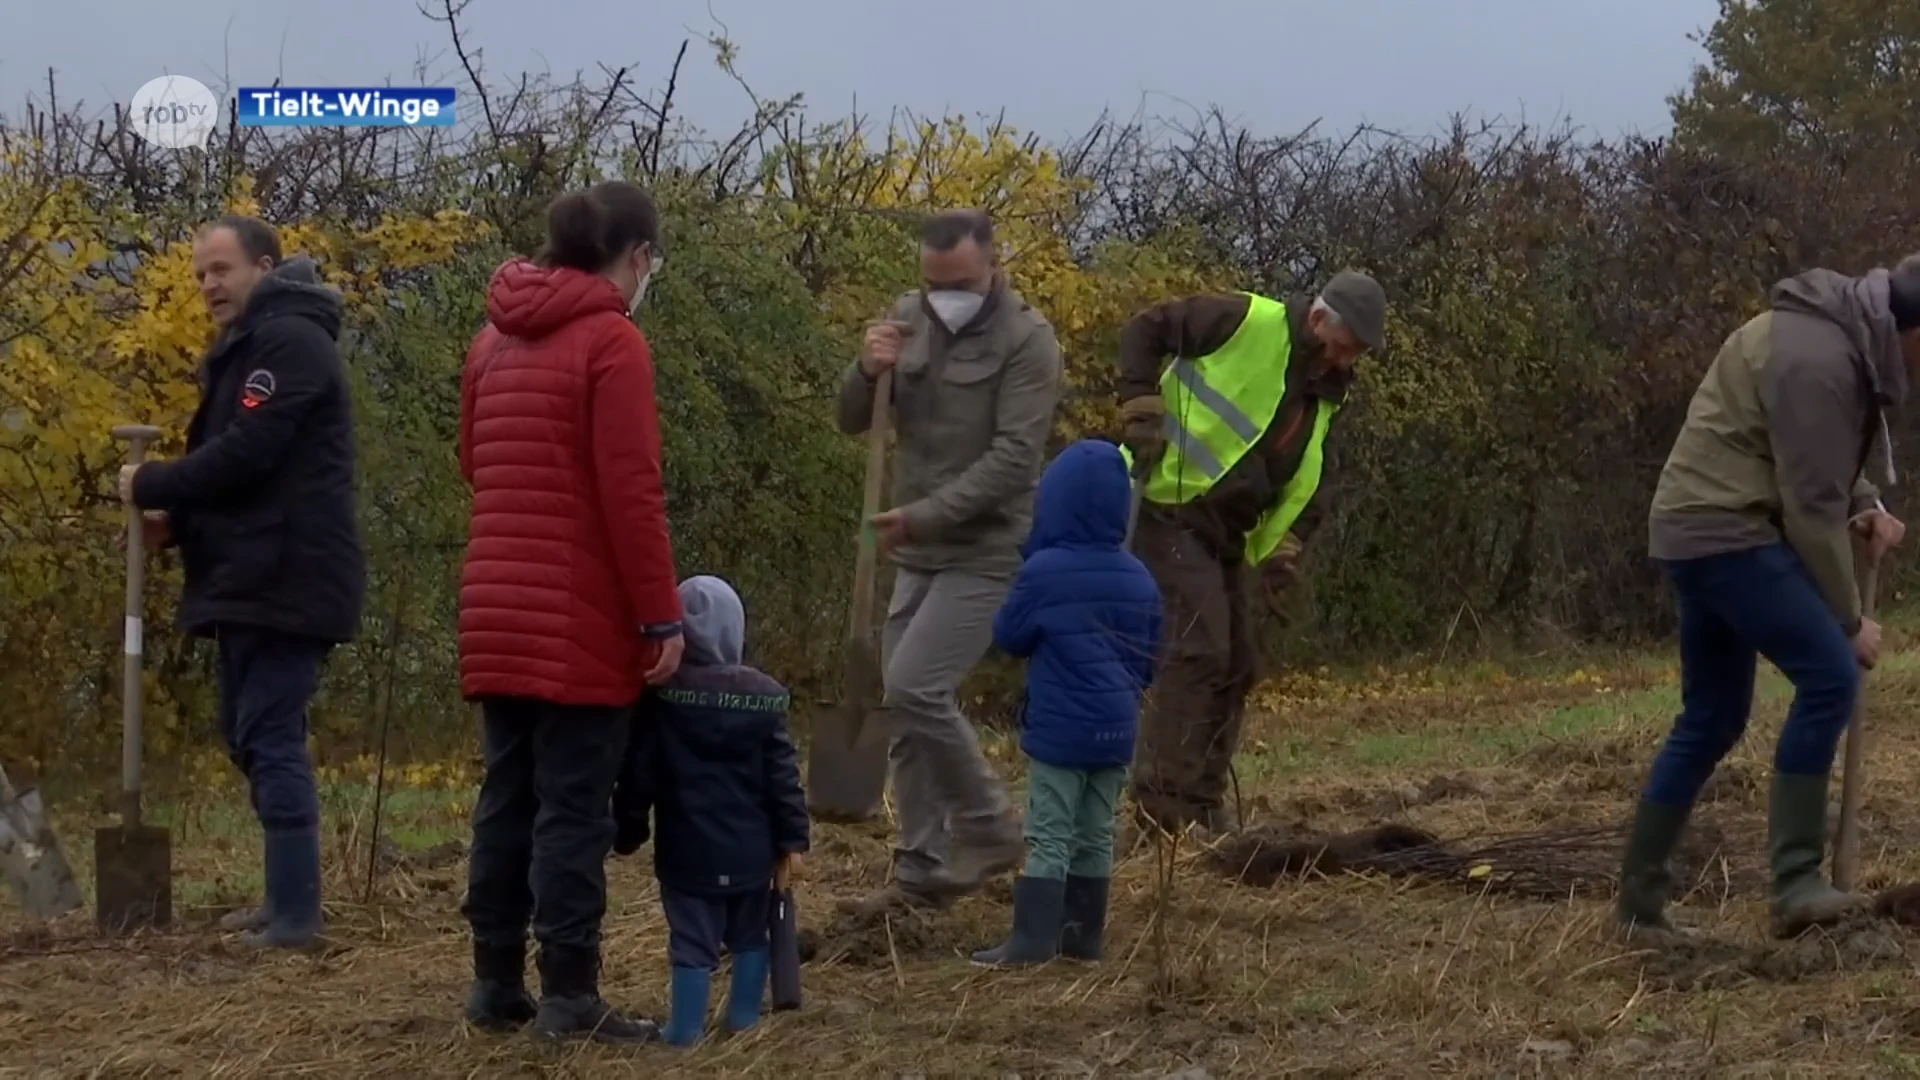 Medewerkers van Fiscadvies planten 2000 bomen voor eigen bedrijfsbos in Tielt-Winge